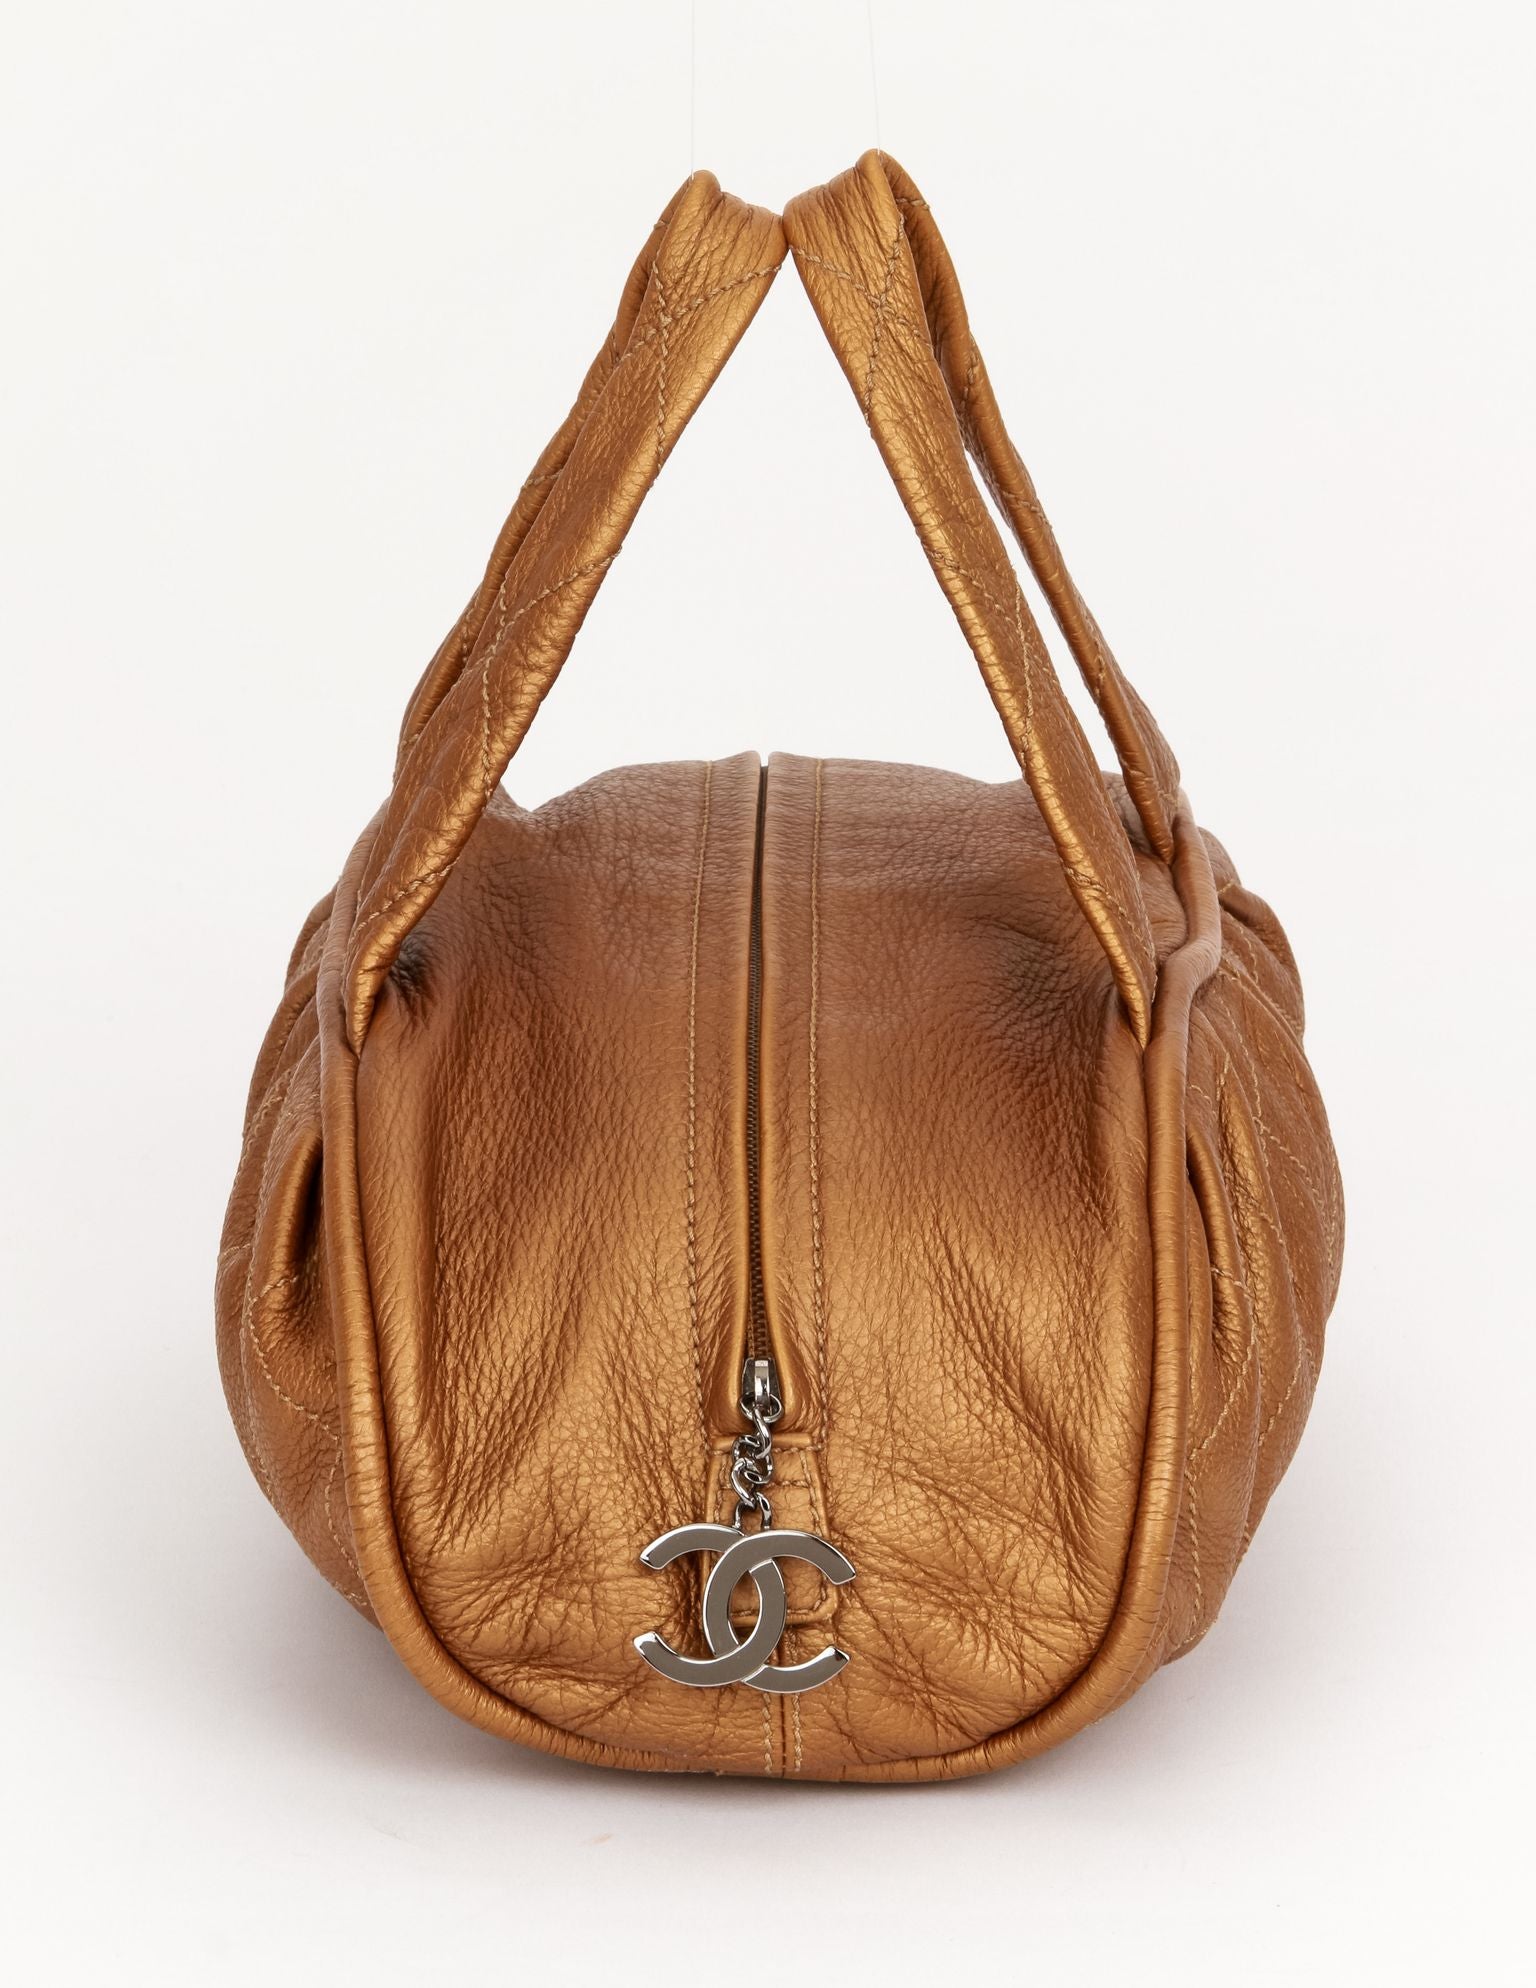 Chanel Le Marais Bronze Soft Handbag - Vintage Lux